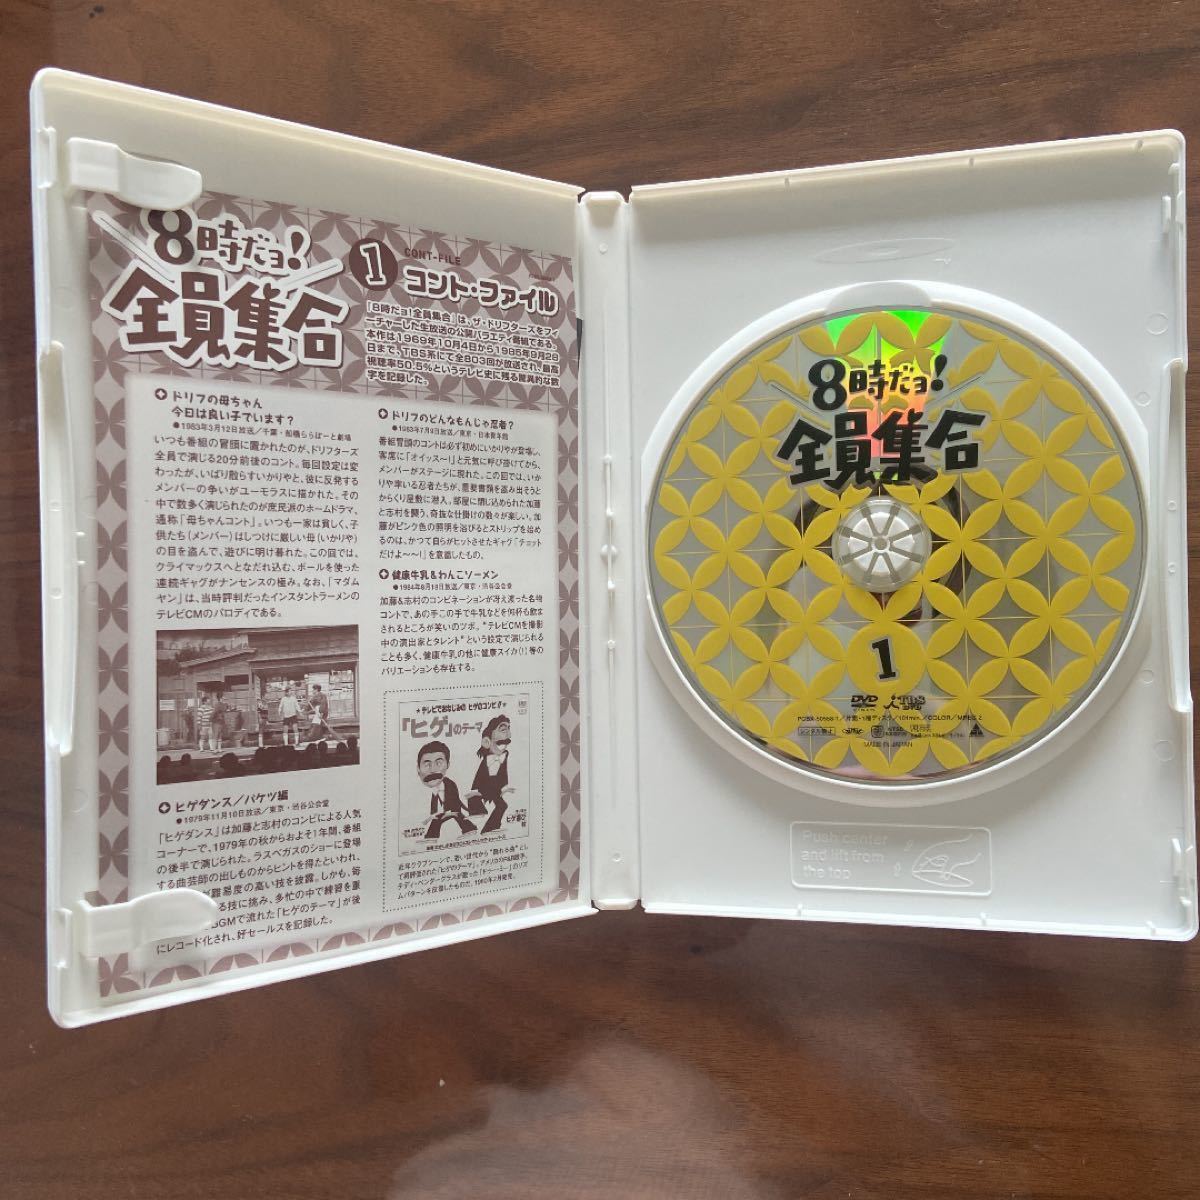 ザ・ドリフターズ結成40周年記念盤 8時だョ 全員集合 DVD-BOX〈3枚組